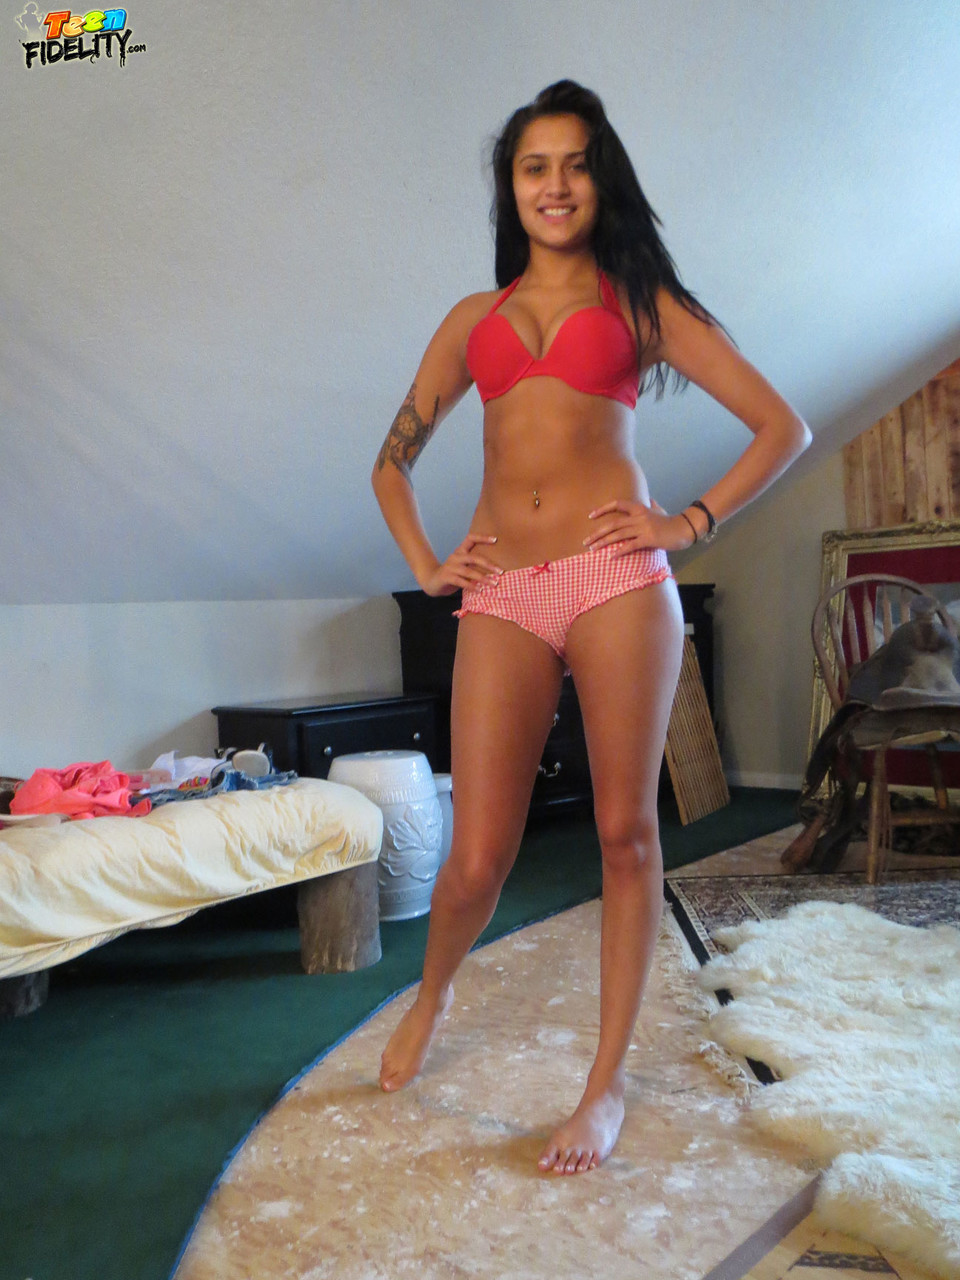 Teen babe with small tits Giselle Mari drops bra & panties to spread topless photo porno #426685752 | Teen Fidelity Pics, Giselle Mari, Ryan Madison, Italian, porno mobile